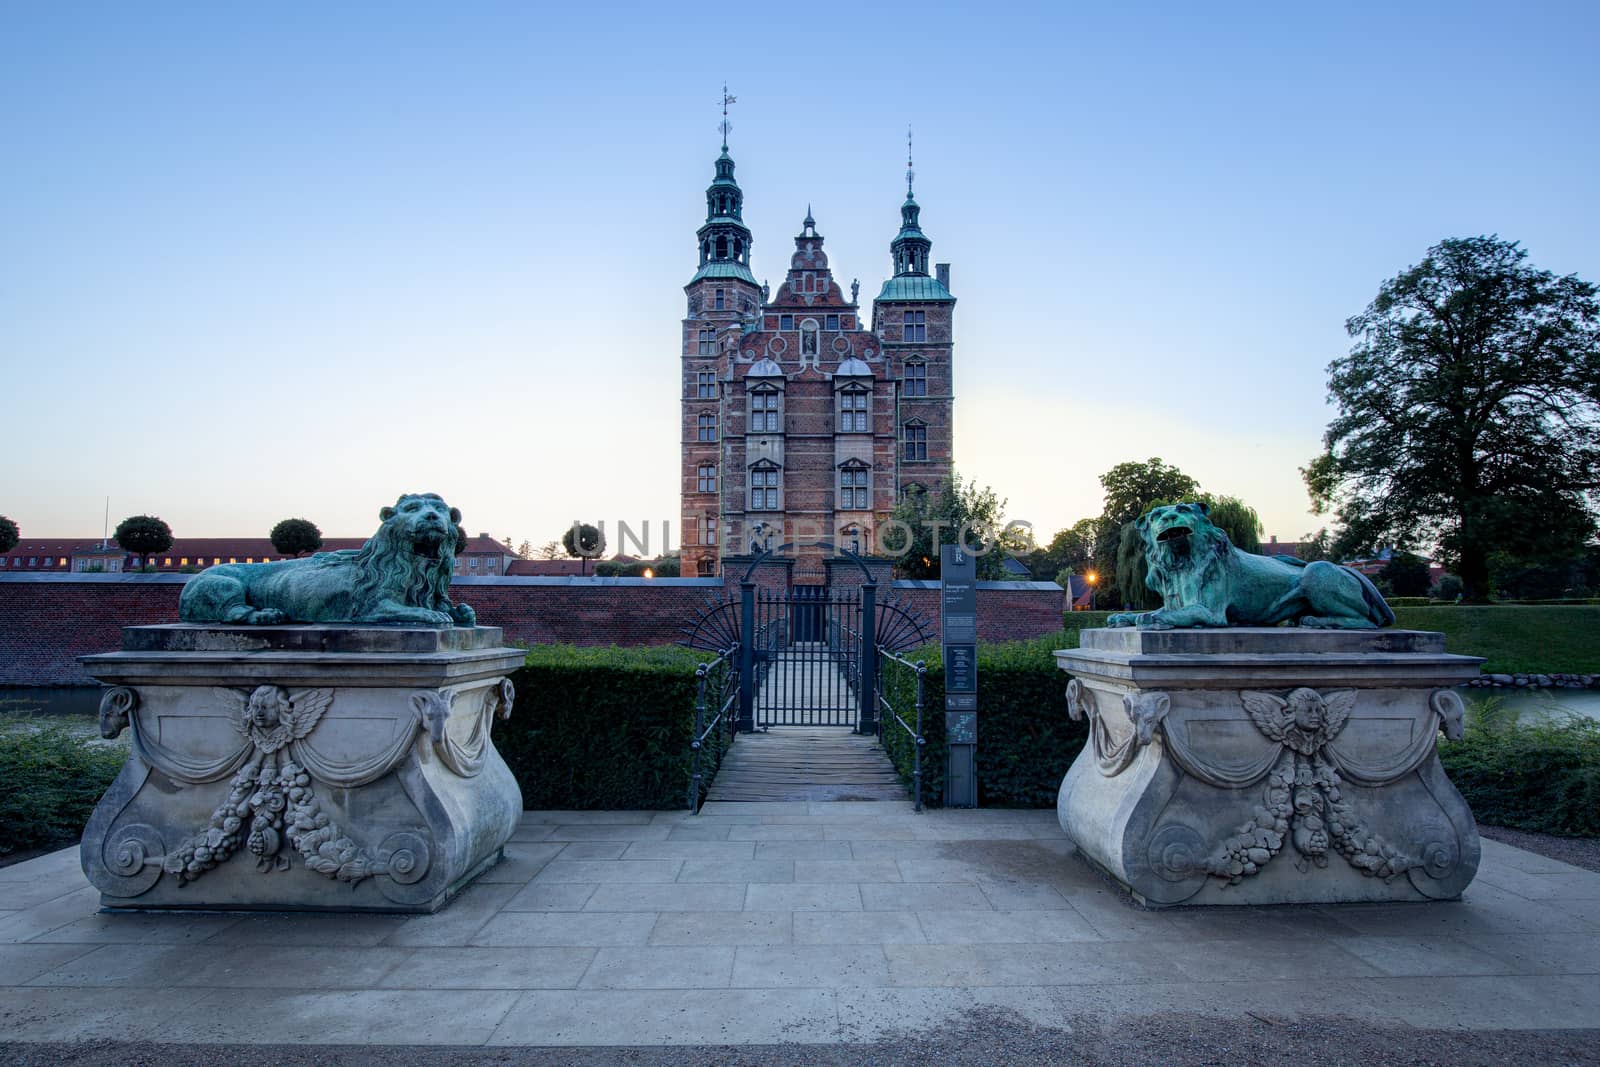 Copenhagen, Denmark - August 19, 2019: Sunset view of the historic Rosenborg Castle.